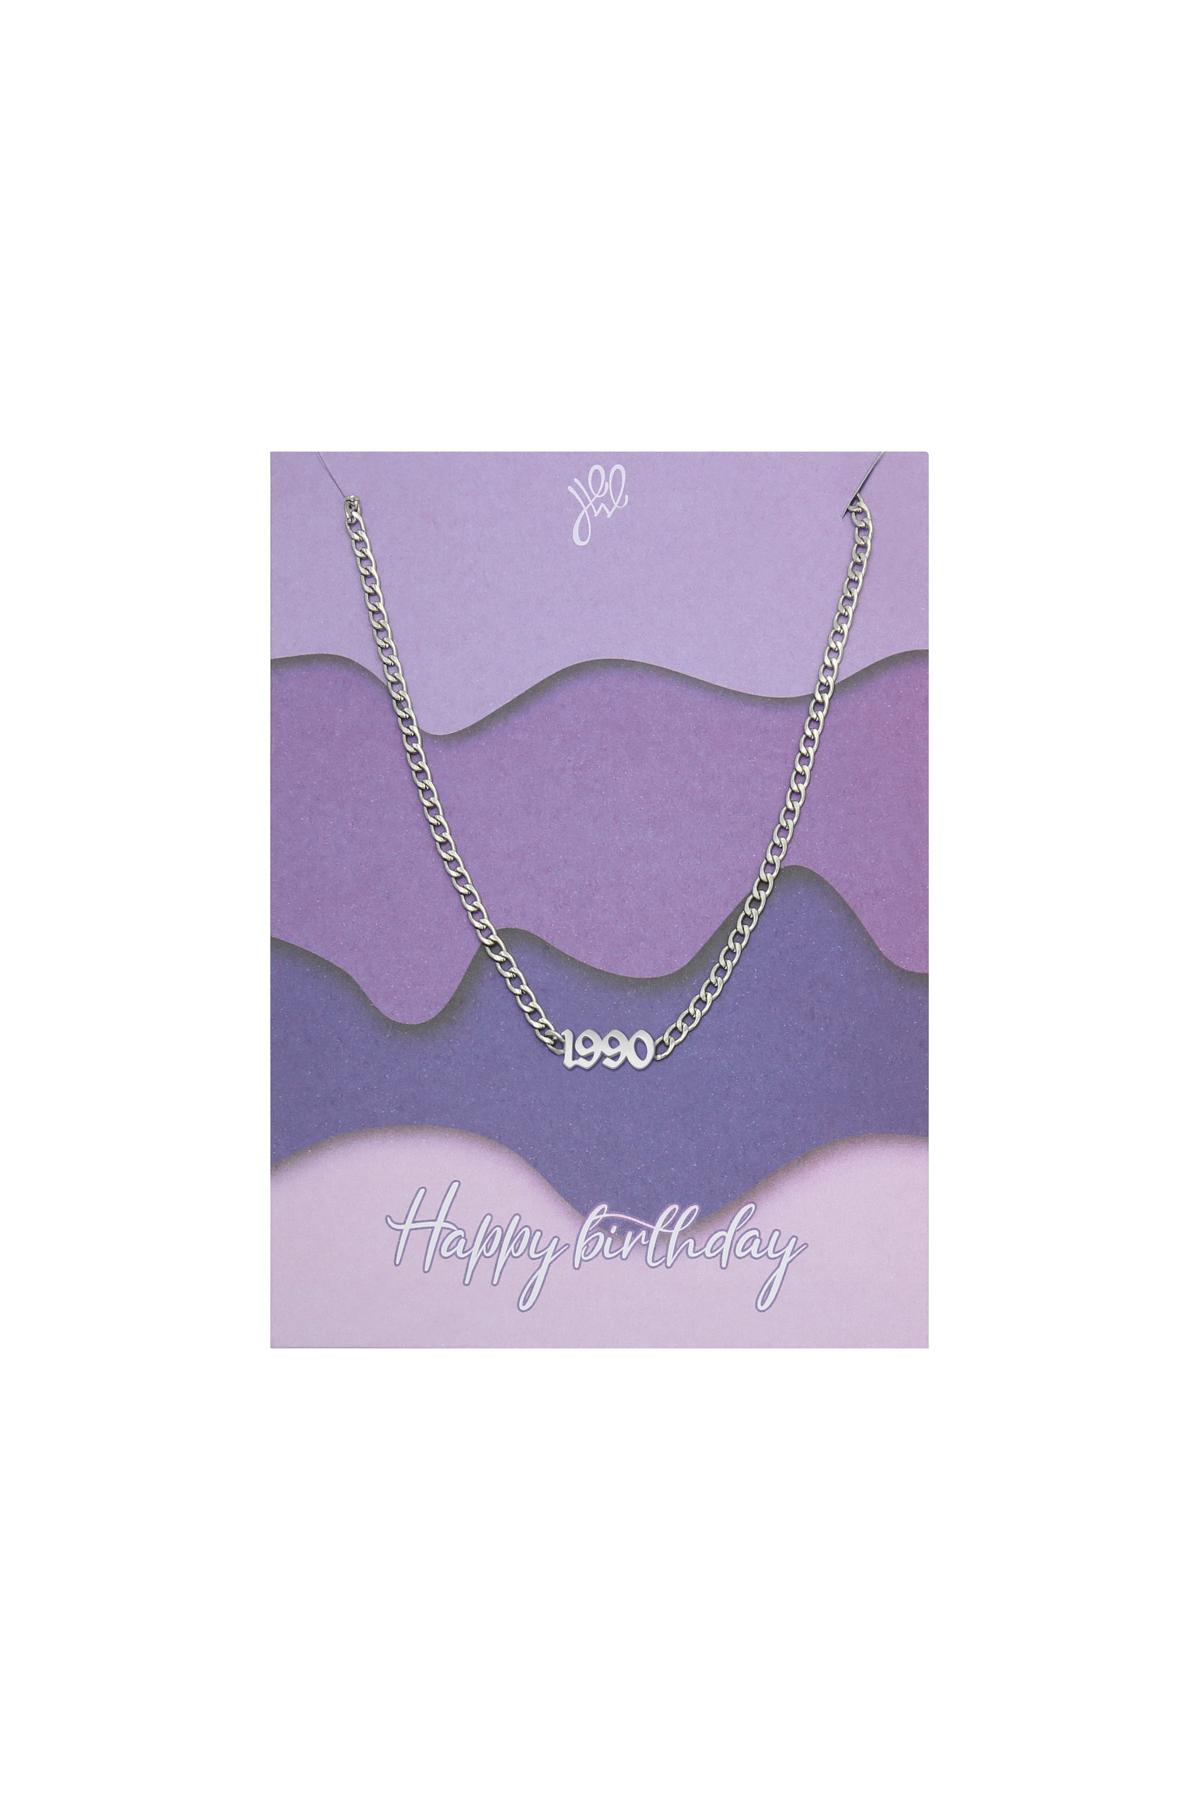 Silber / Halskette Happy Birthday Years - 1990 Silber Edelstahl Bild14